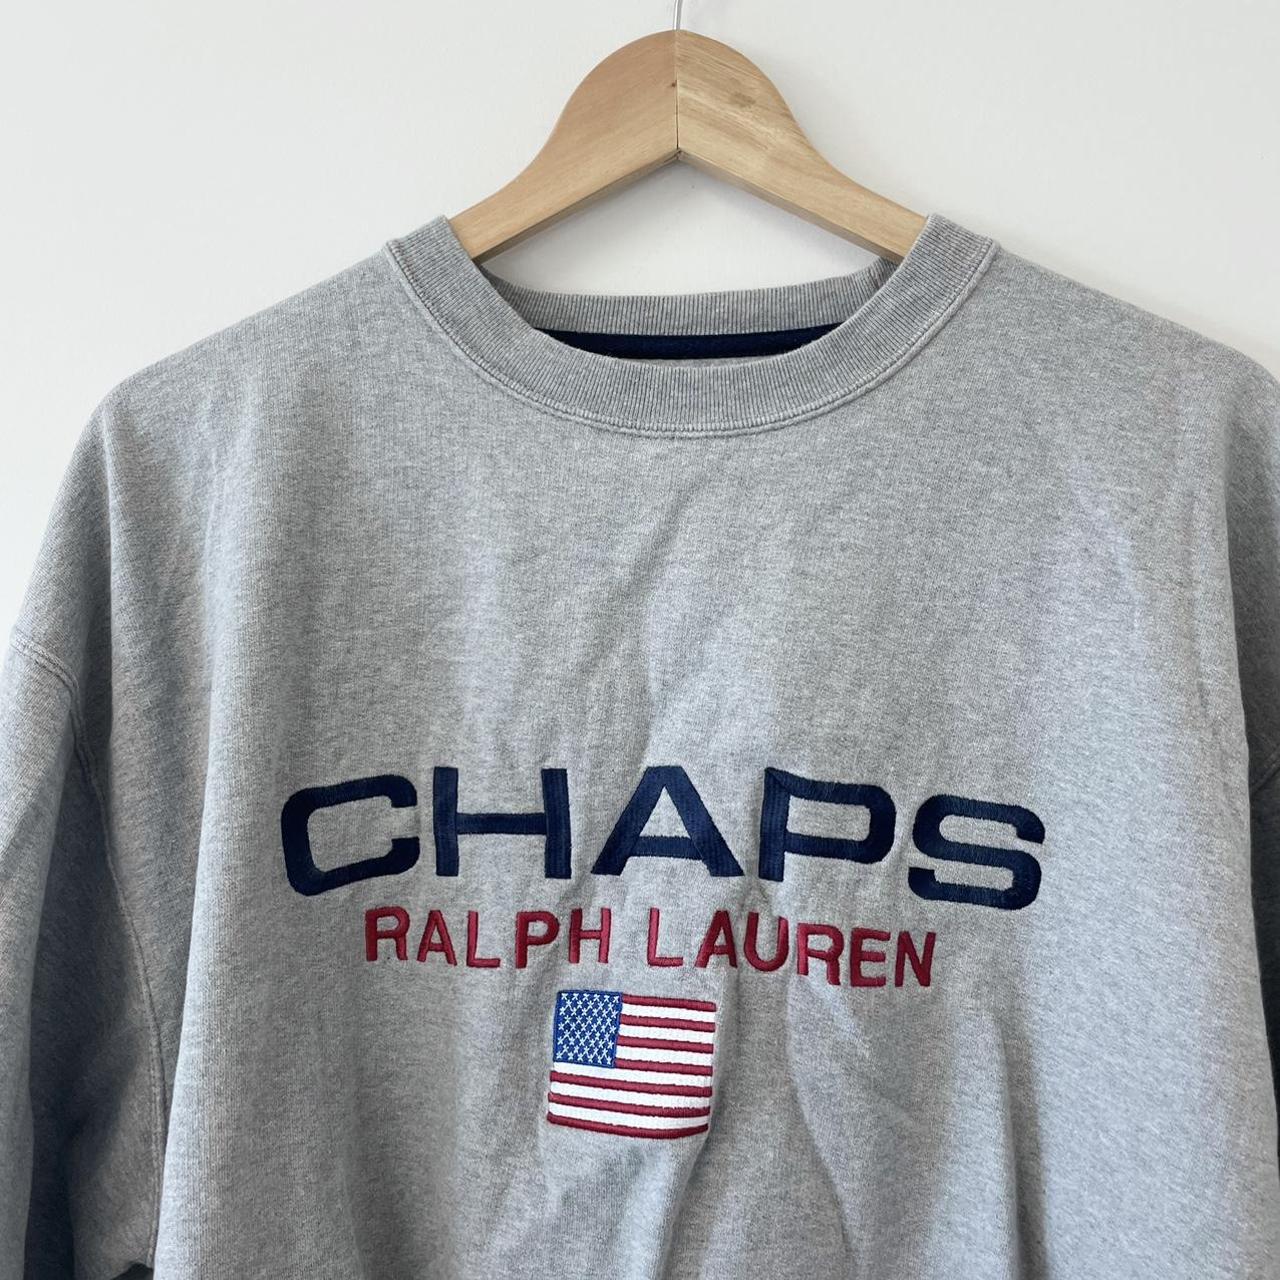 Vintage Chaps by Ralph Lauren grey sweatshirt... - Depop